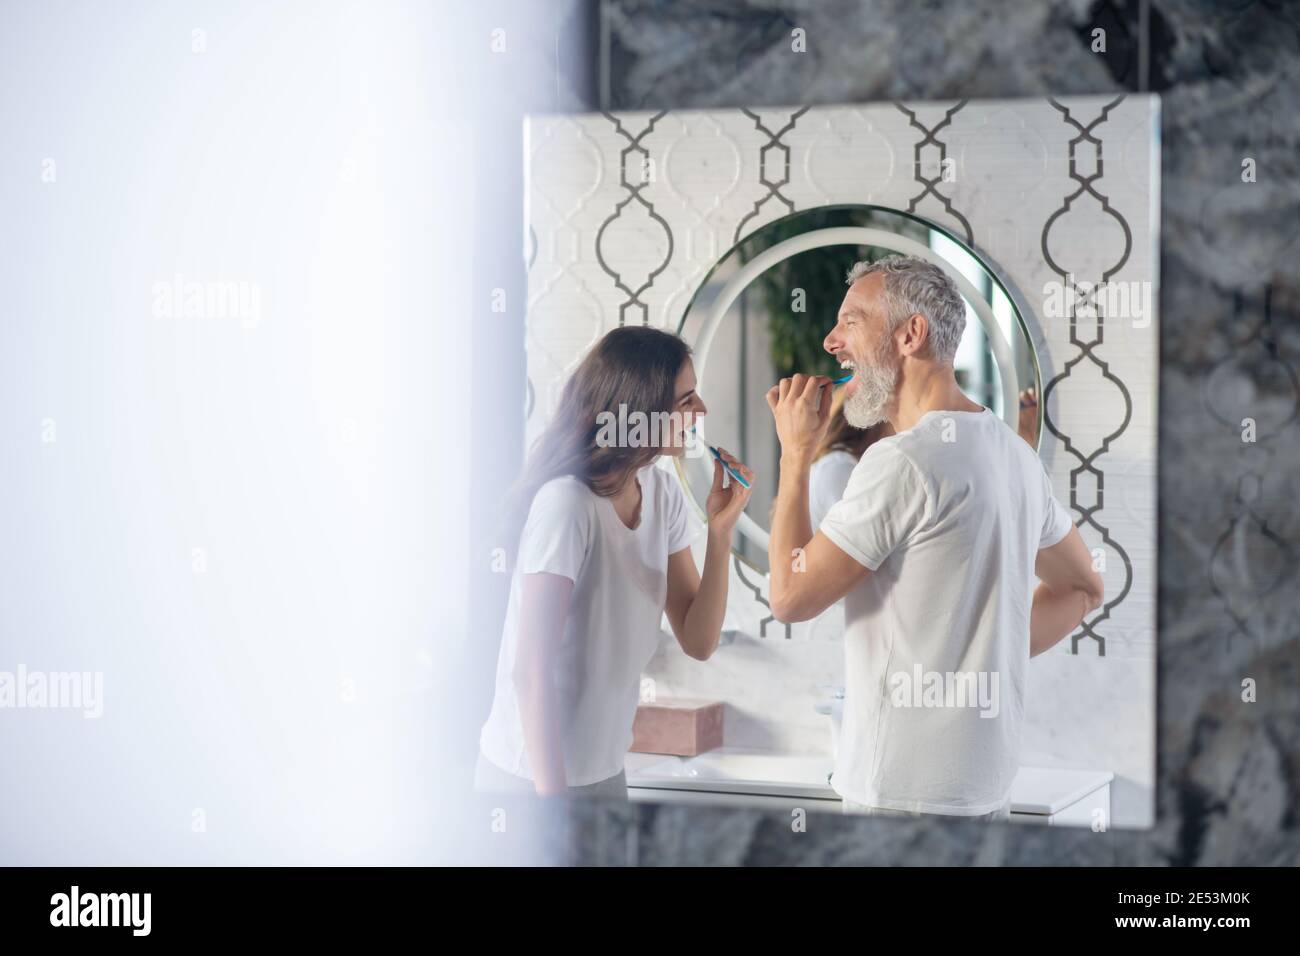 Profil de l'homme et de la femme se brossant les dents Banque D'Images